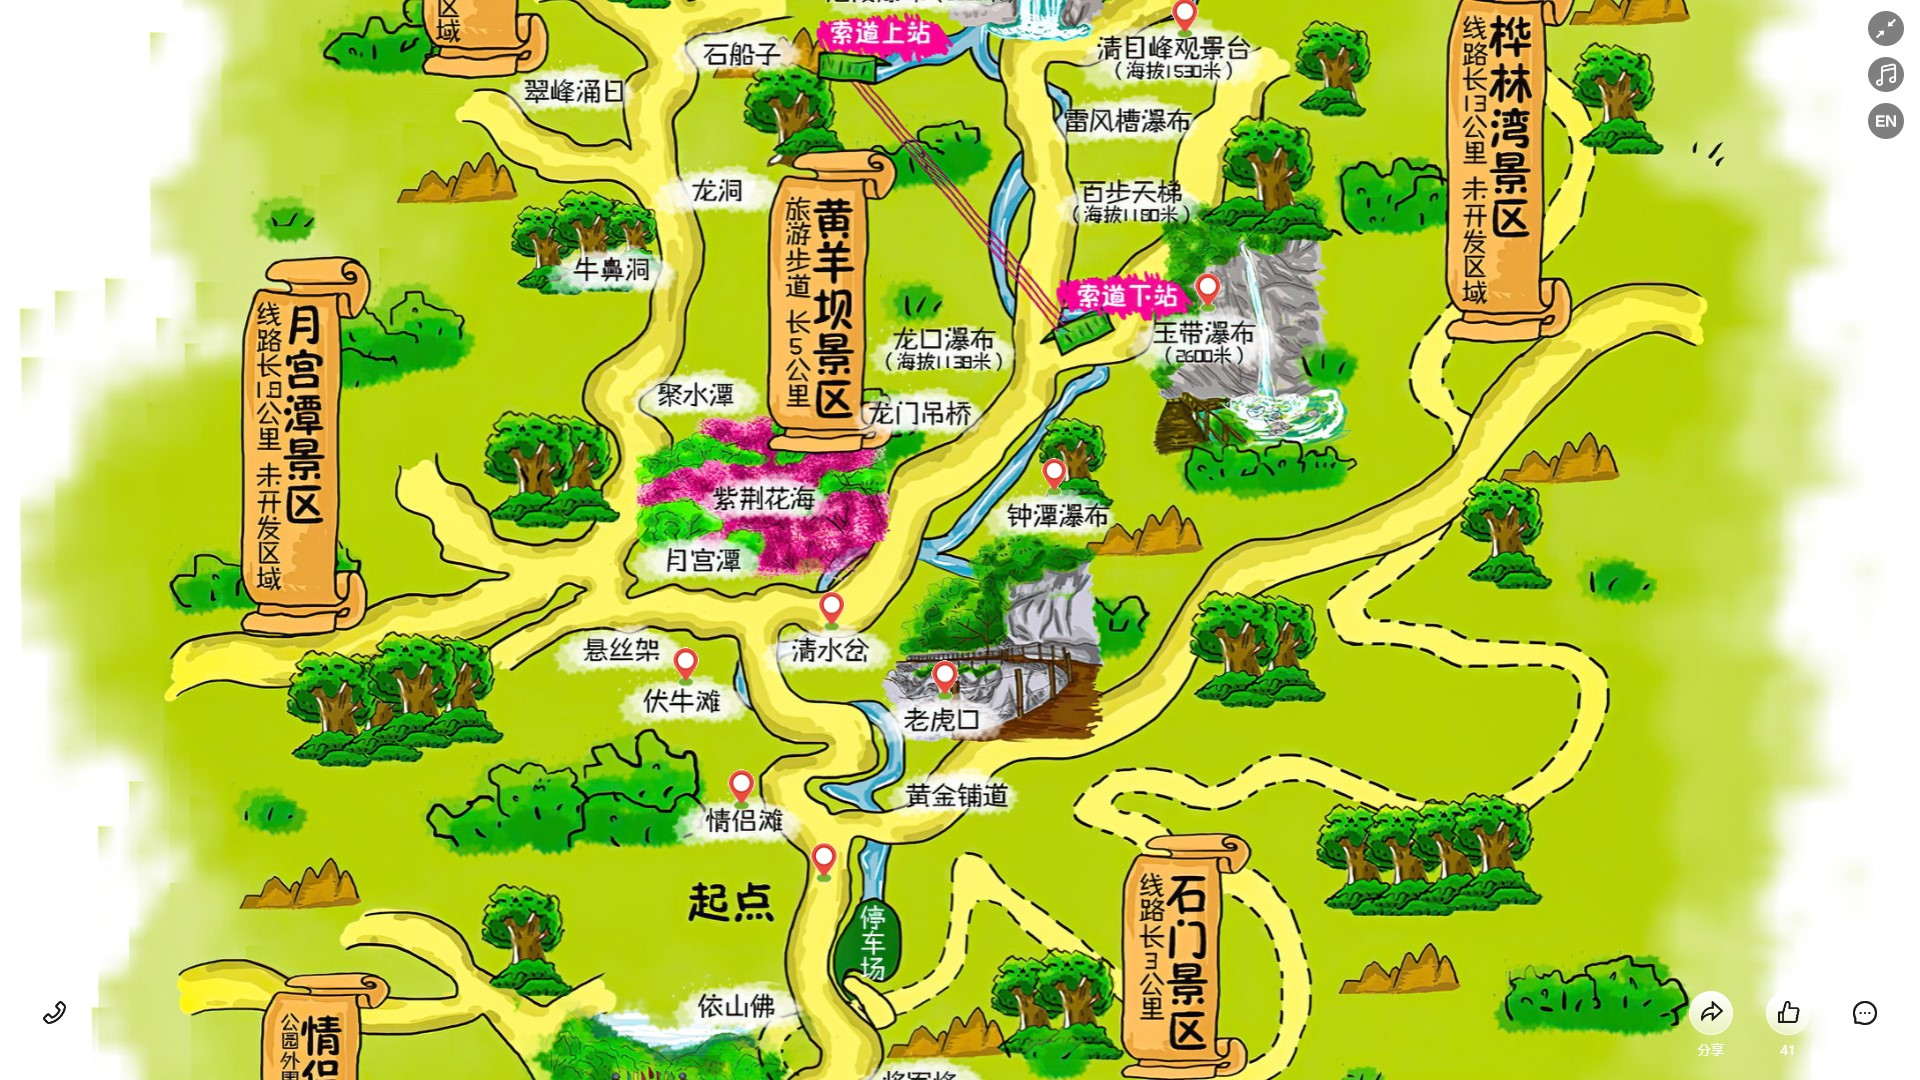 京口景区导览系统